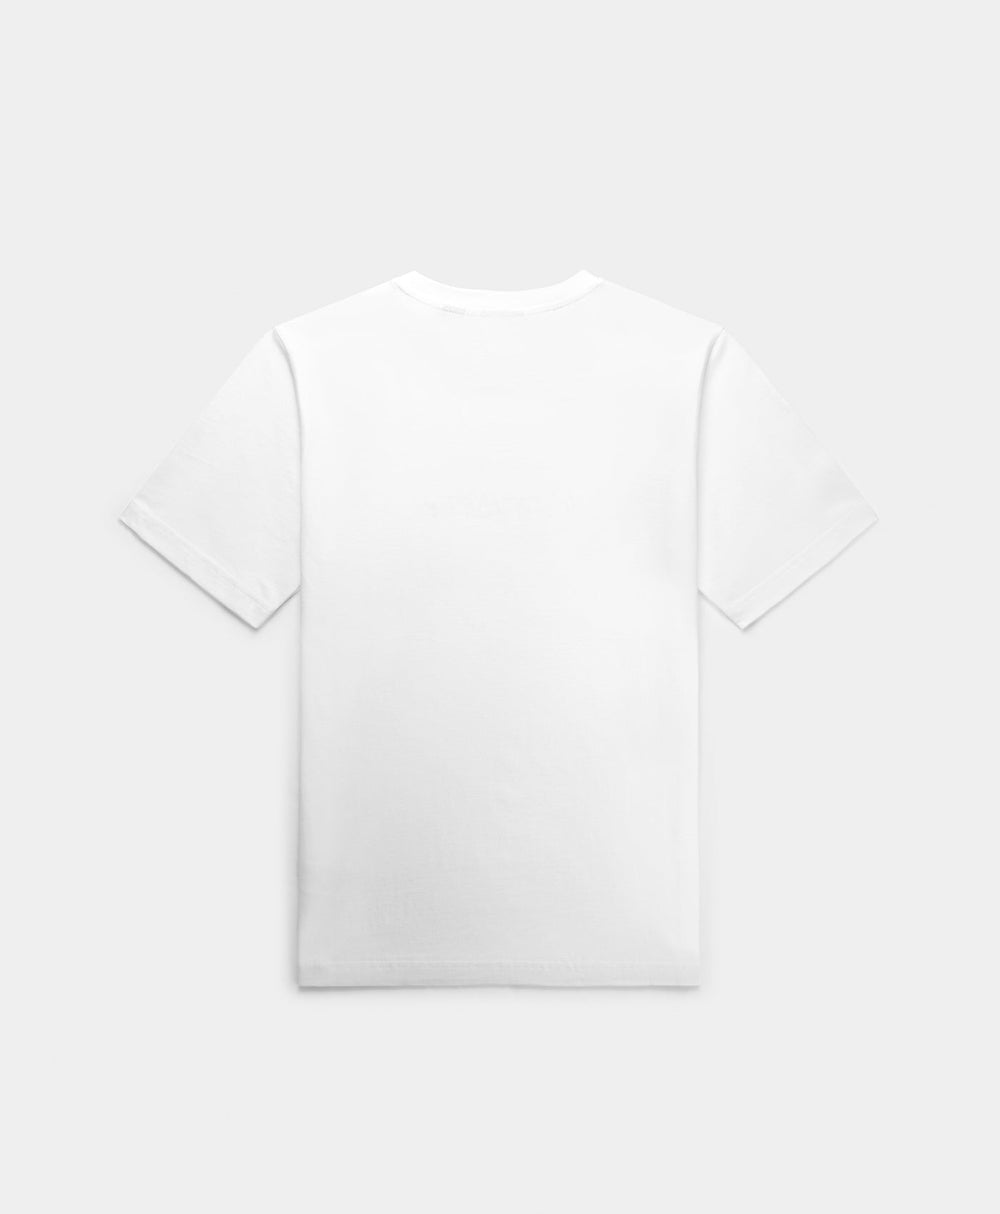 DP - White Unified Type T-Shirt - Packshot - Rear